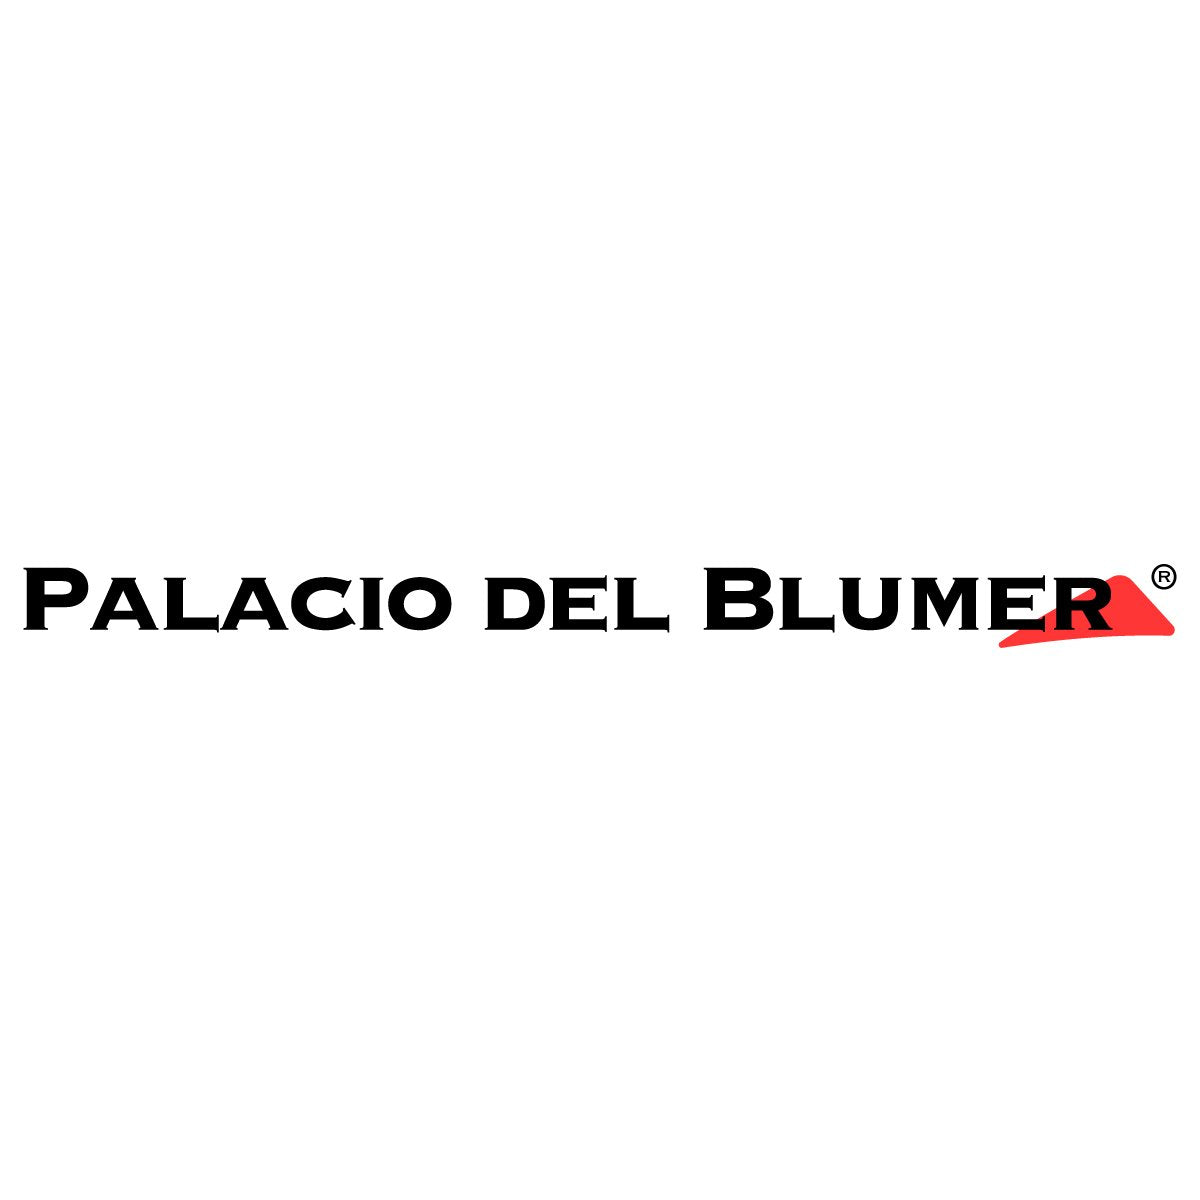 El Palacio Del Blumer